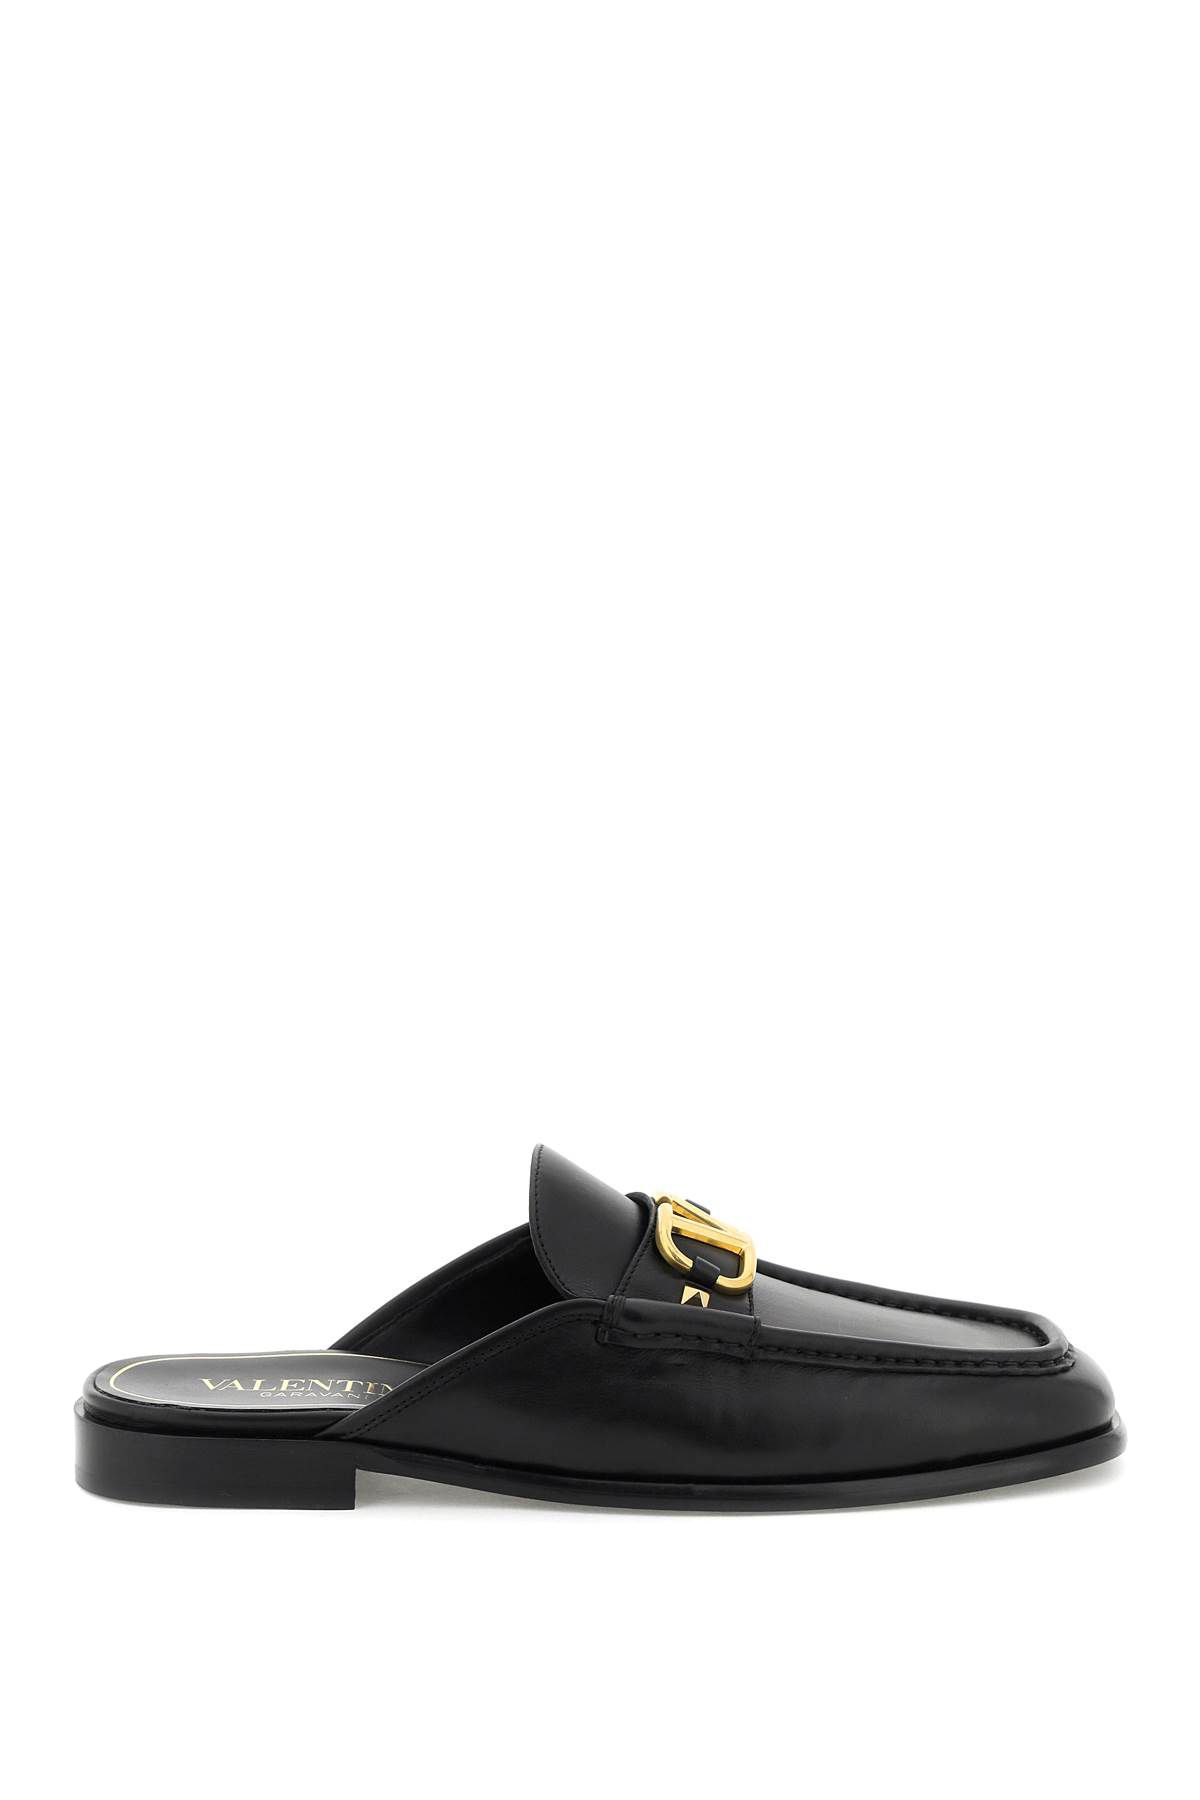 Valentino Garavani V-logo Leather Backless Loafers In Black